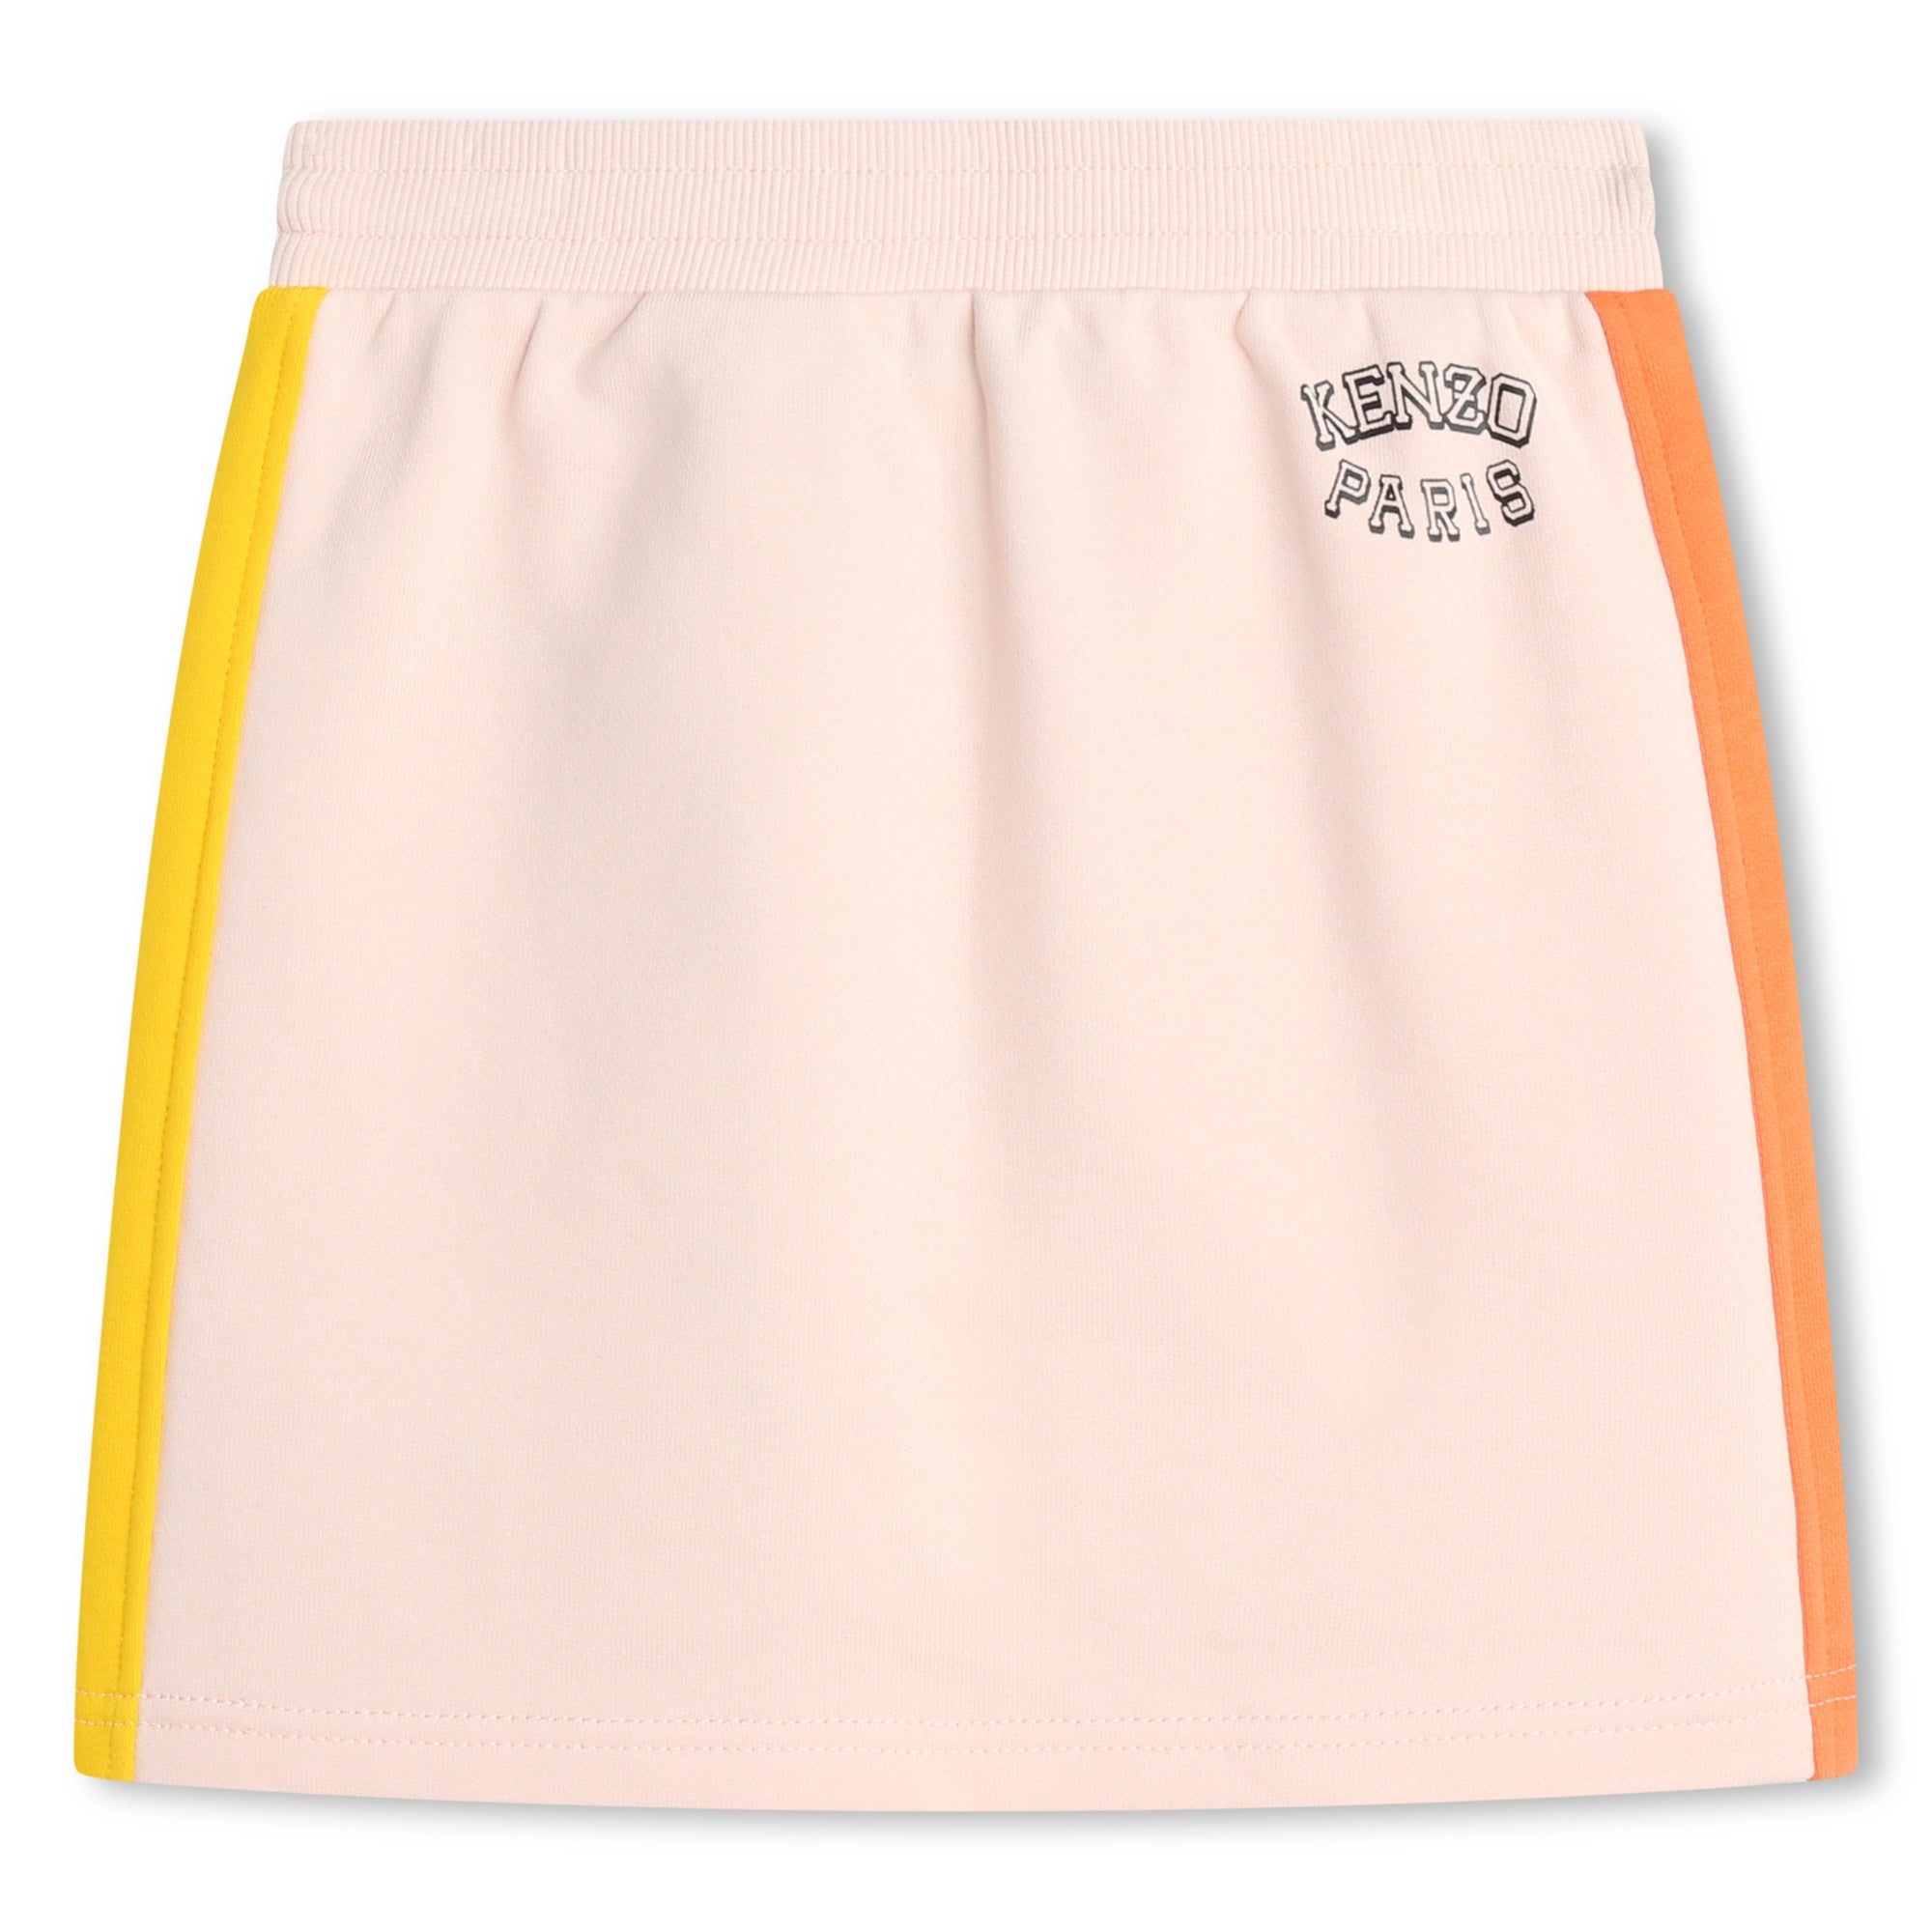 Girls Pink Logo Cotton Skirt